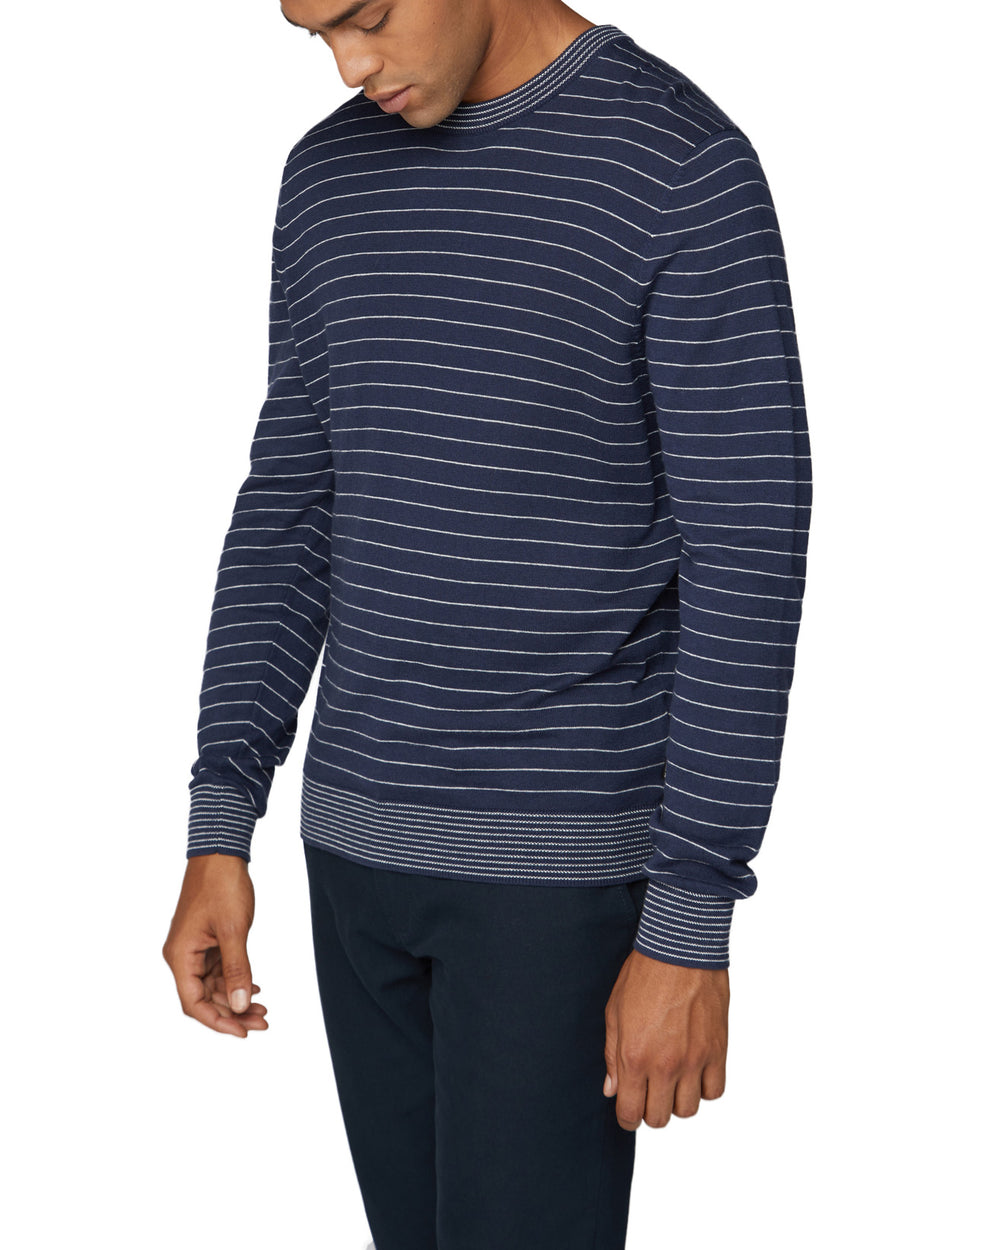 Fine Stripe Knit Crewneck Sweater - Dark Navy